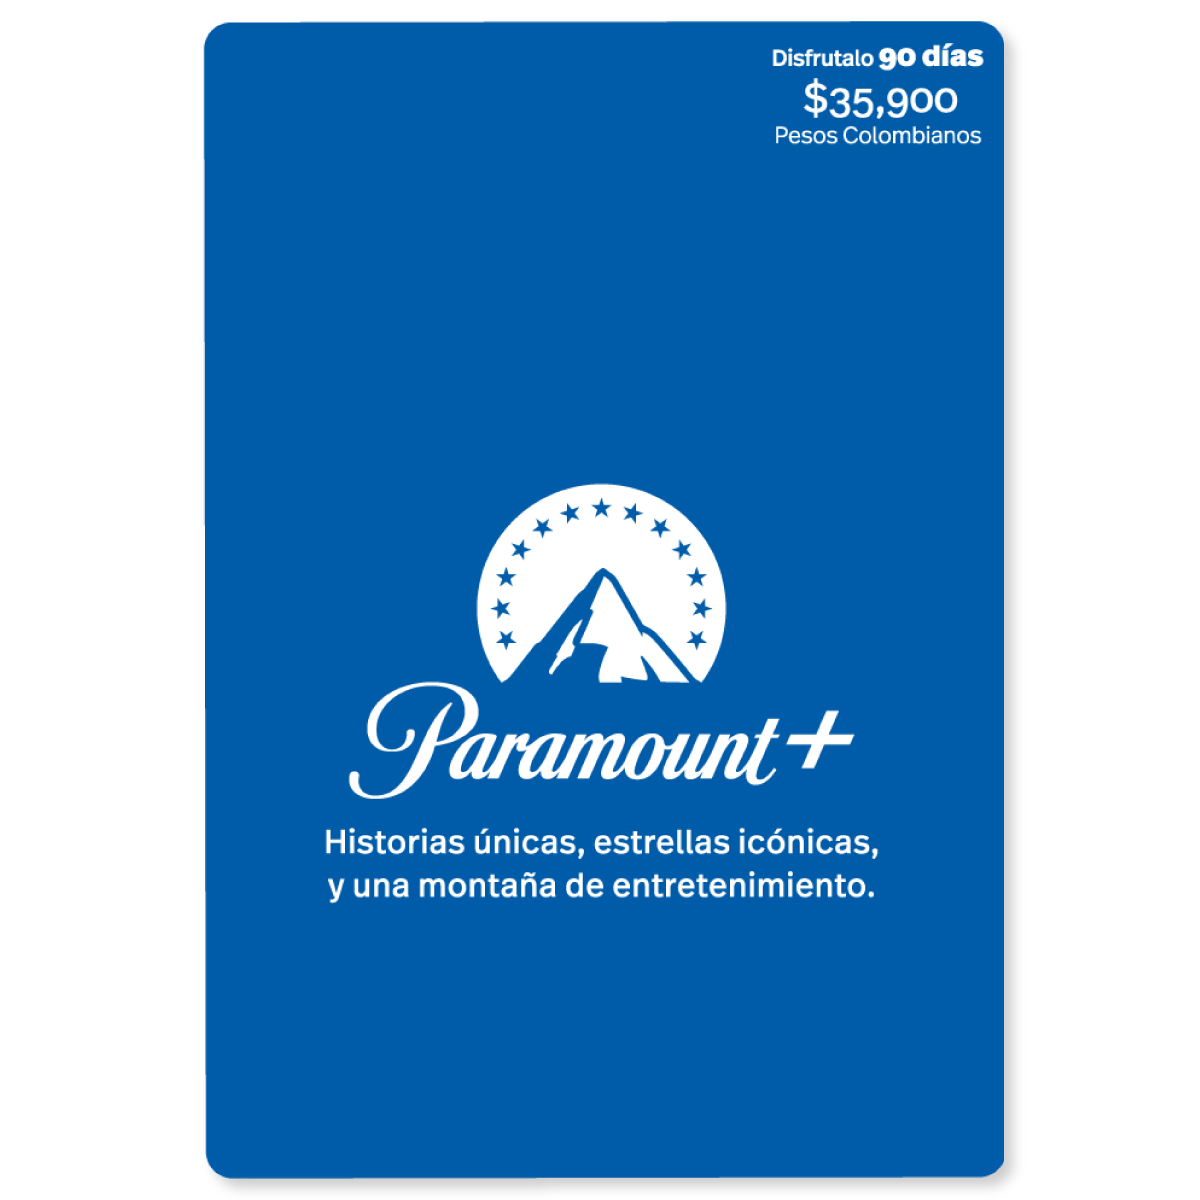 Paramount - 90 días